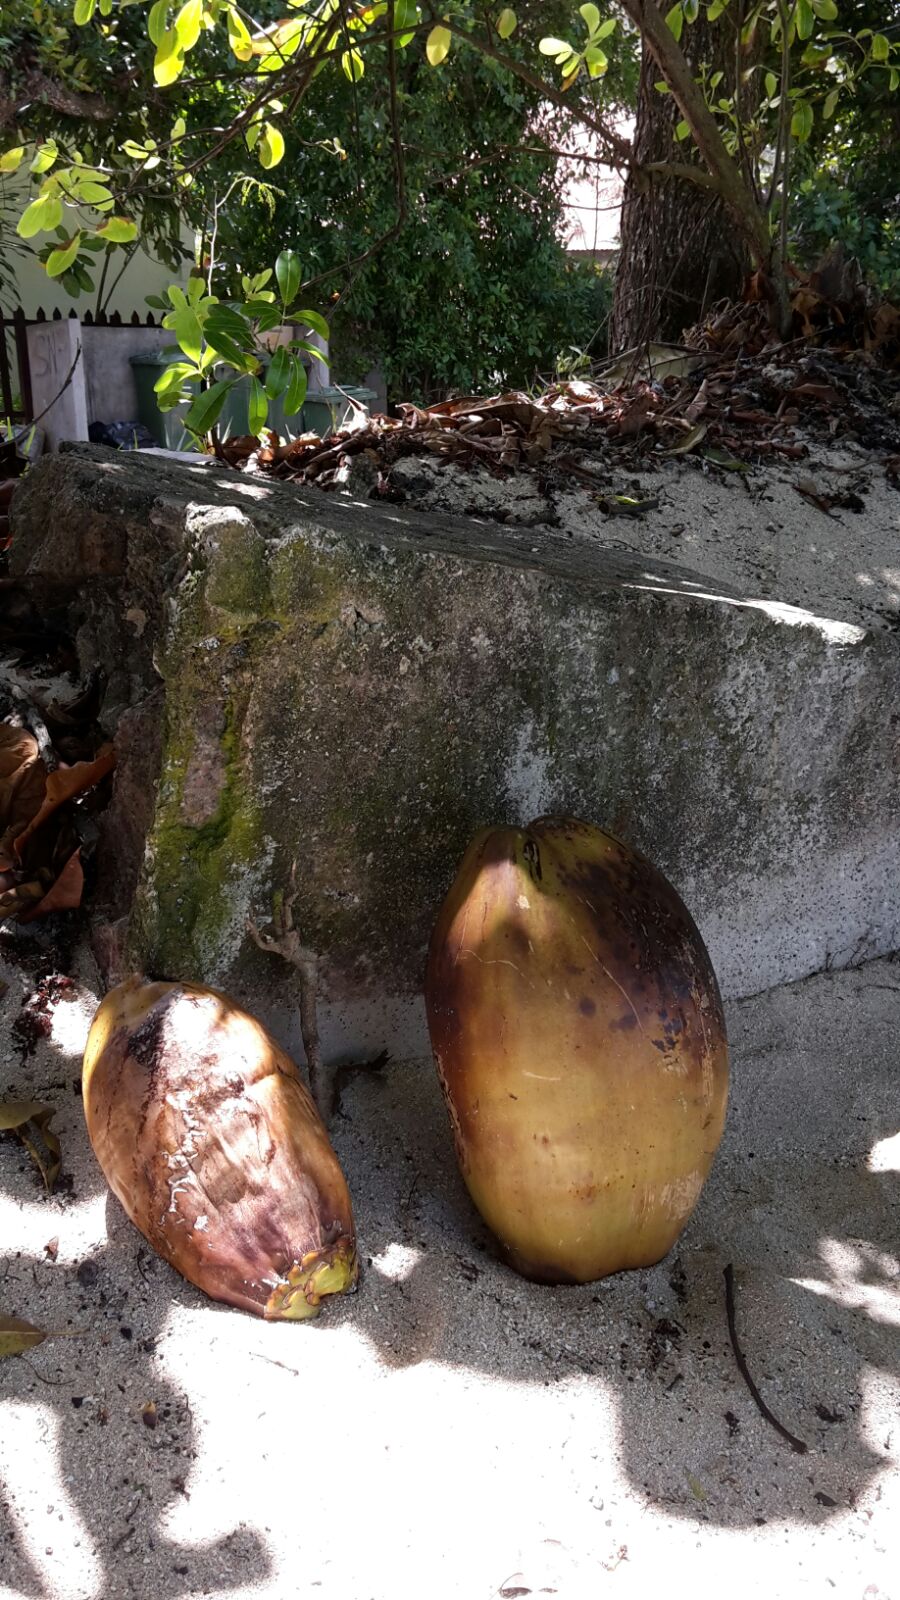 Kokosnuesse